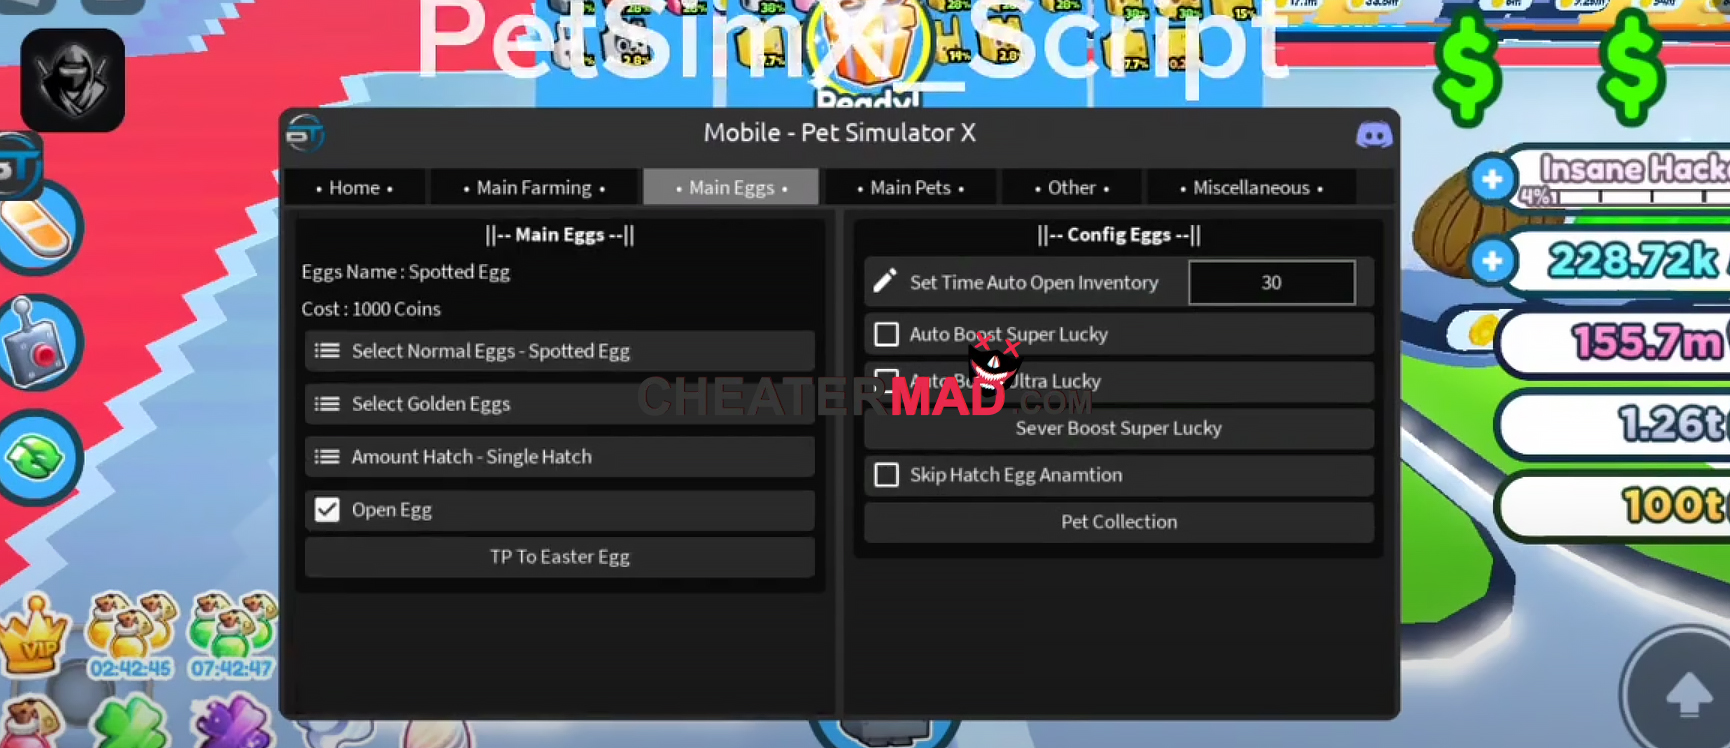 Blacktrap Pet Simulator X Script Download 100% Free